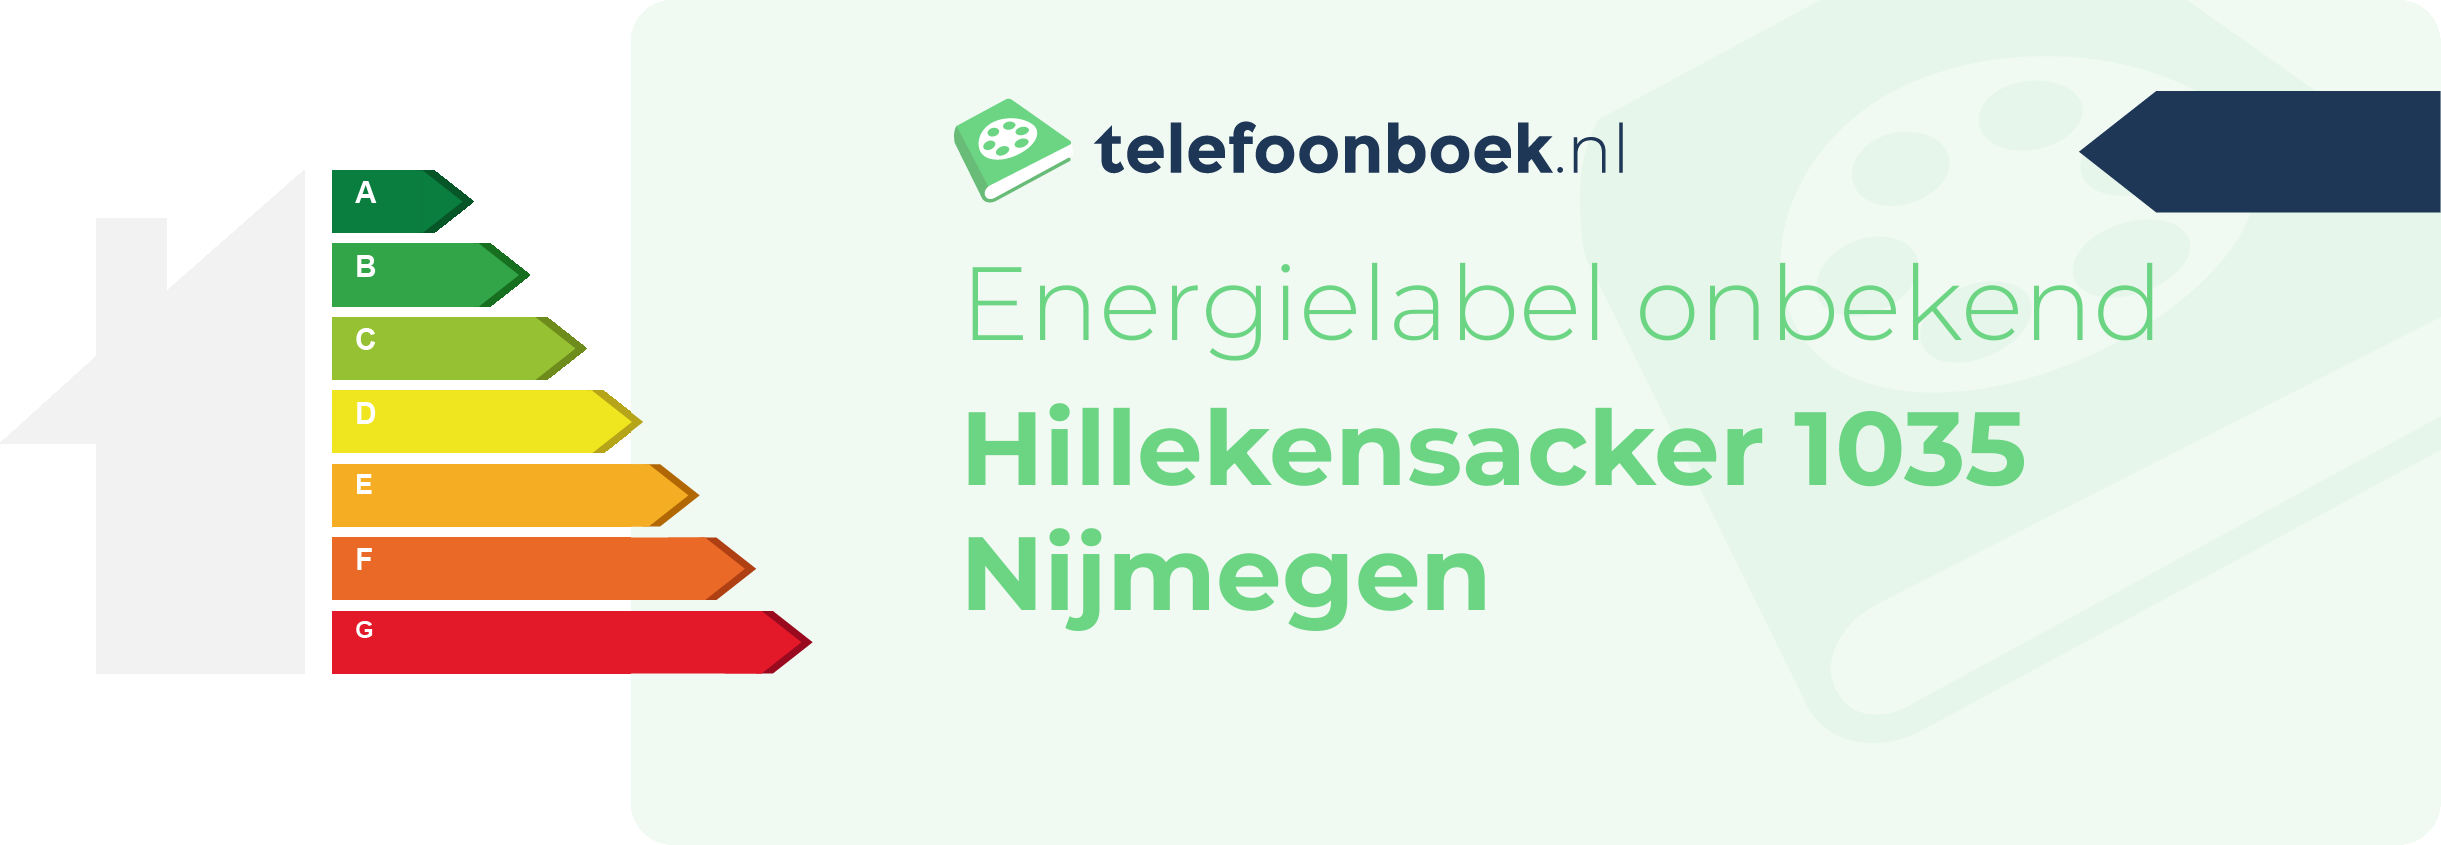 Energielabel Hillekensacker 1035 Nijmegen